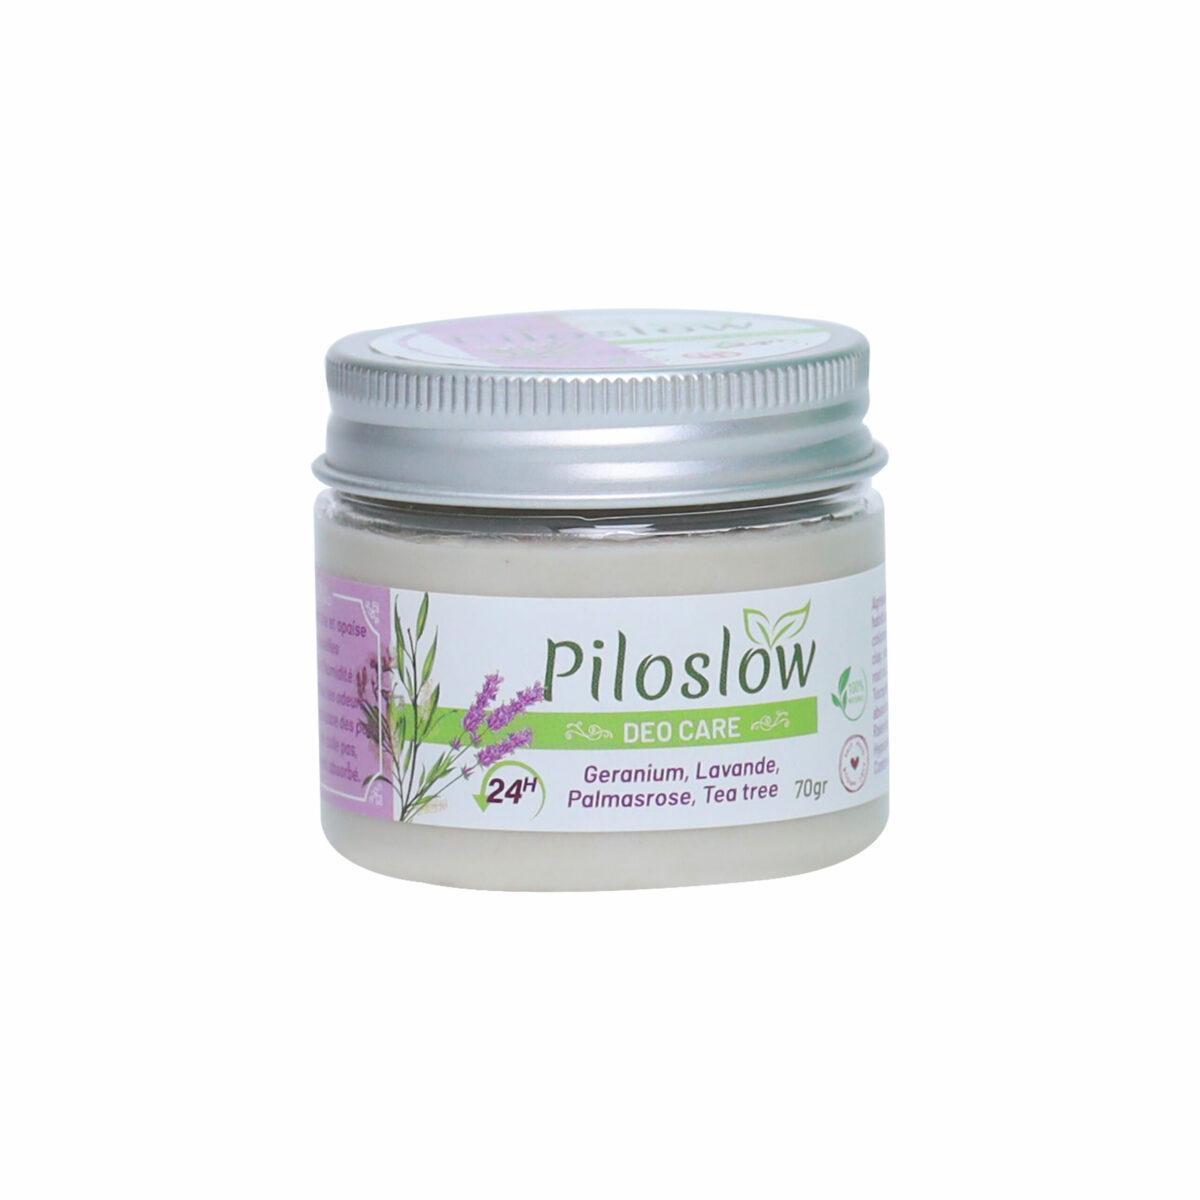 Piloslow (geranium, lavande, palmarose, tea tree): déodorant naturel ralentissant la repousse des poils